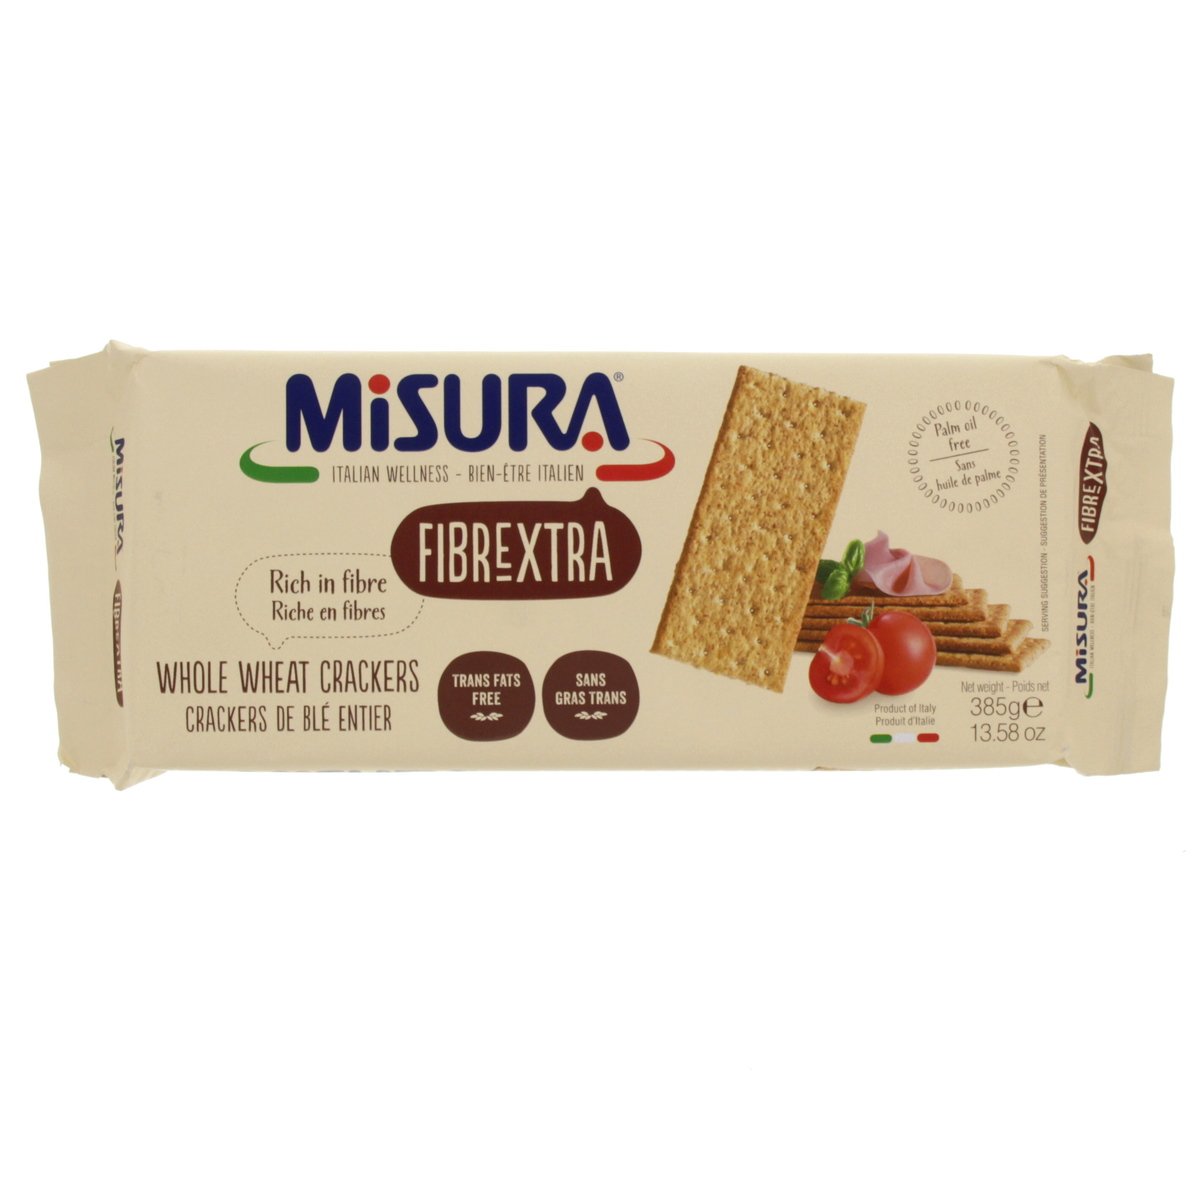 Misura Fibrextra Whole Wheat Crackers 385 g